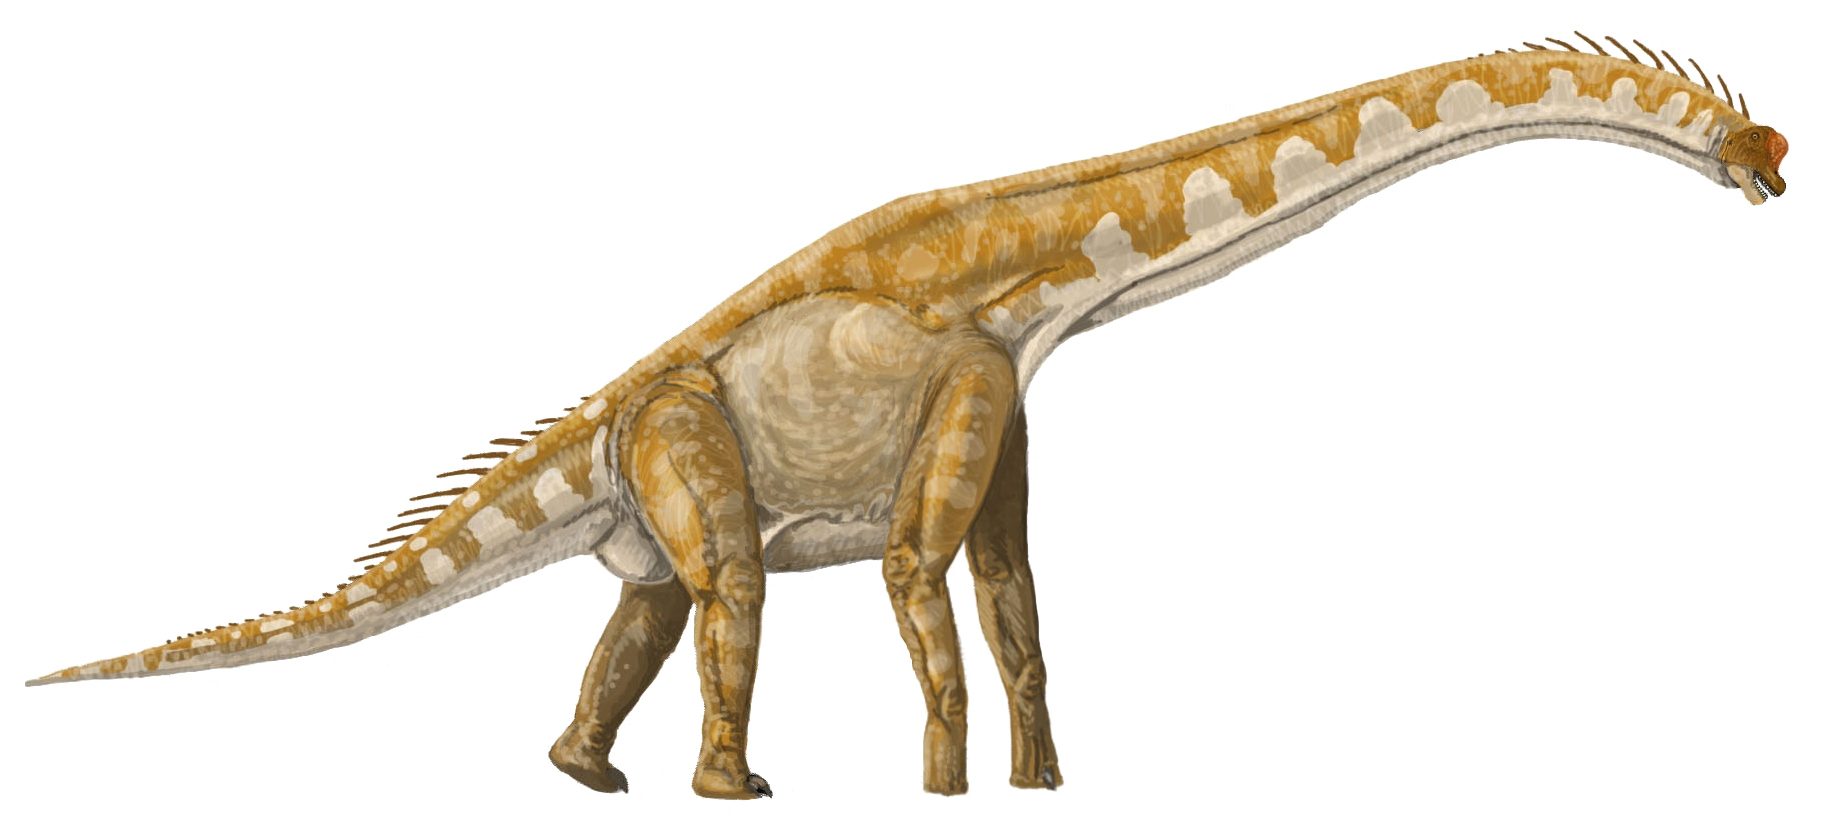 Dokonce i obří brachiosauridní sauropodi, jako byl tento Giraffatitan brancai, byli na svoji velikost poměrně lehcí. Při relativní hustotě těla kolem 0,93 vážil dospělý jedinec tohoto dlouhokrkého giganta „jen“ kolem 35 tun. Tento blízký příbuzný sev